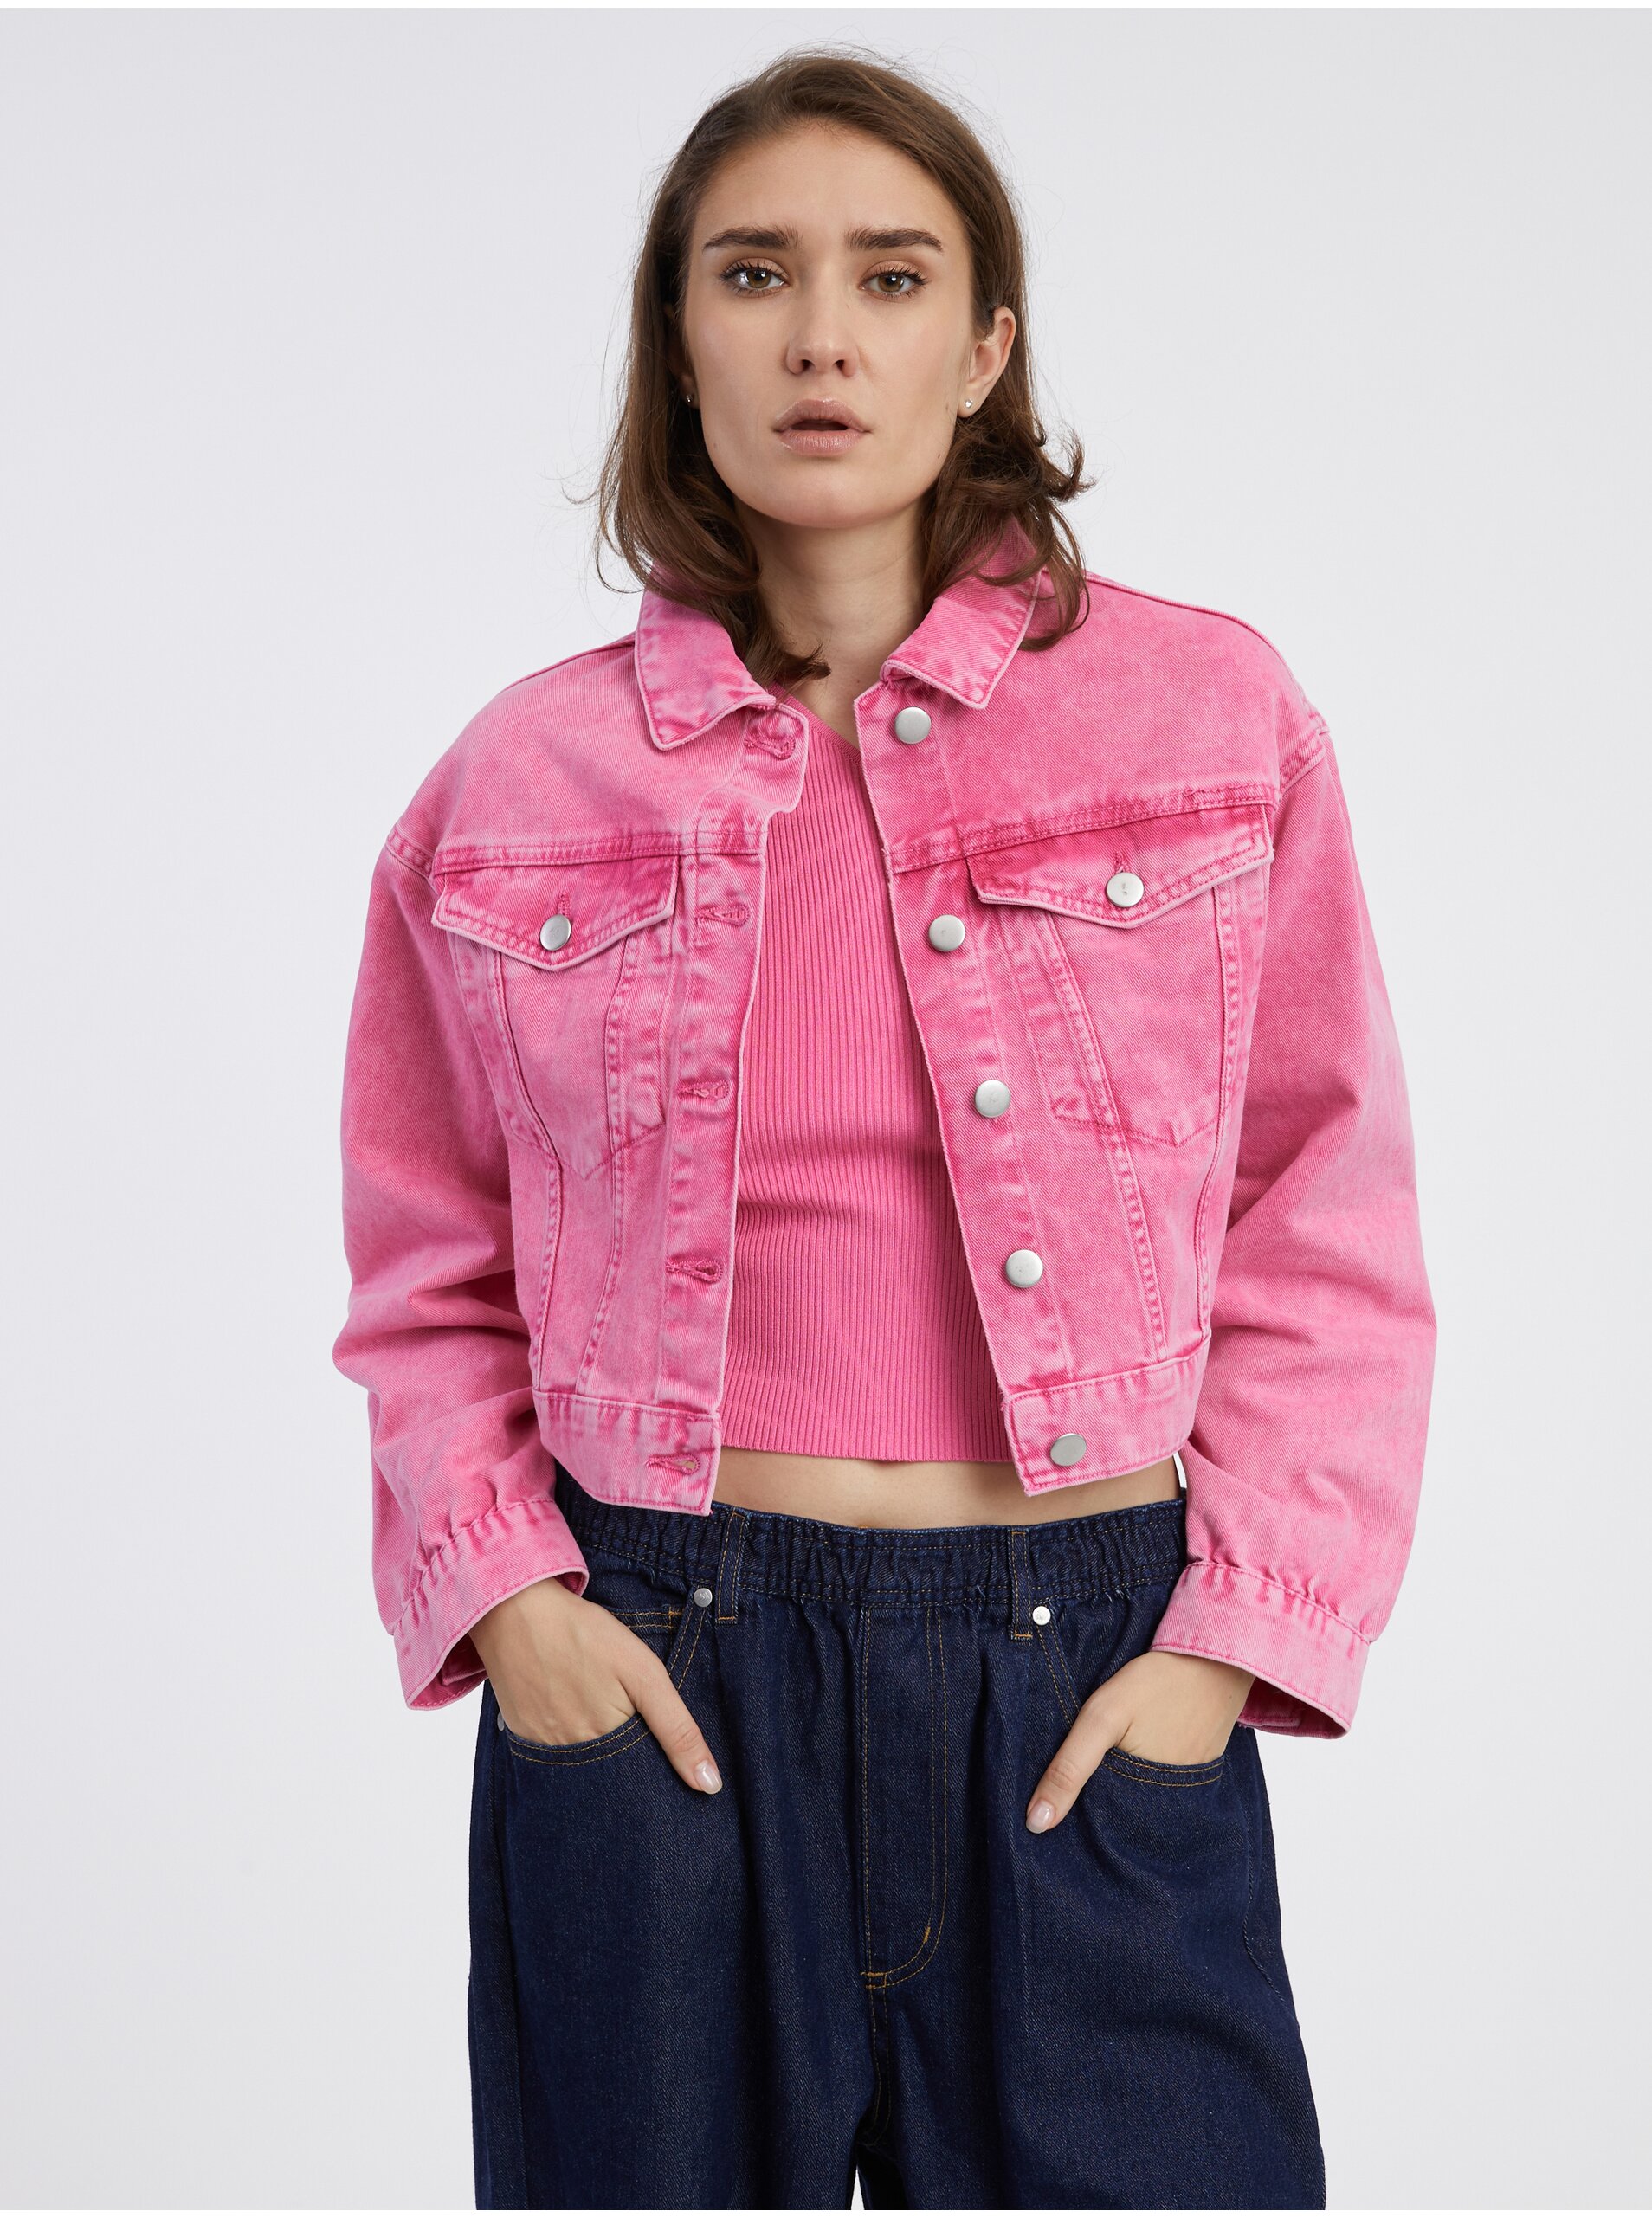 Navy Pink Women's Crop Top Denim Jacket Pieces Liv - Women's